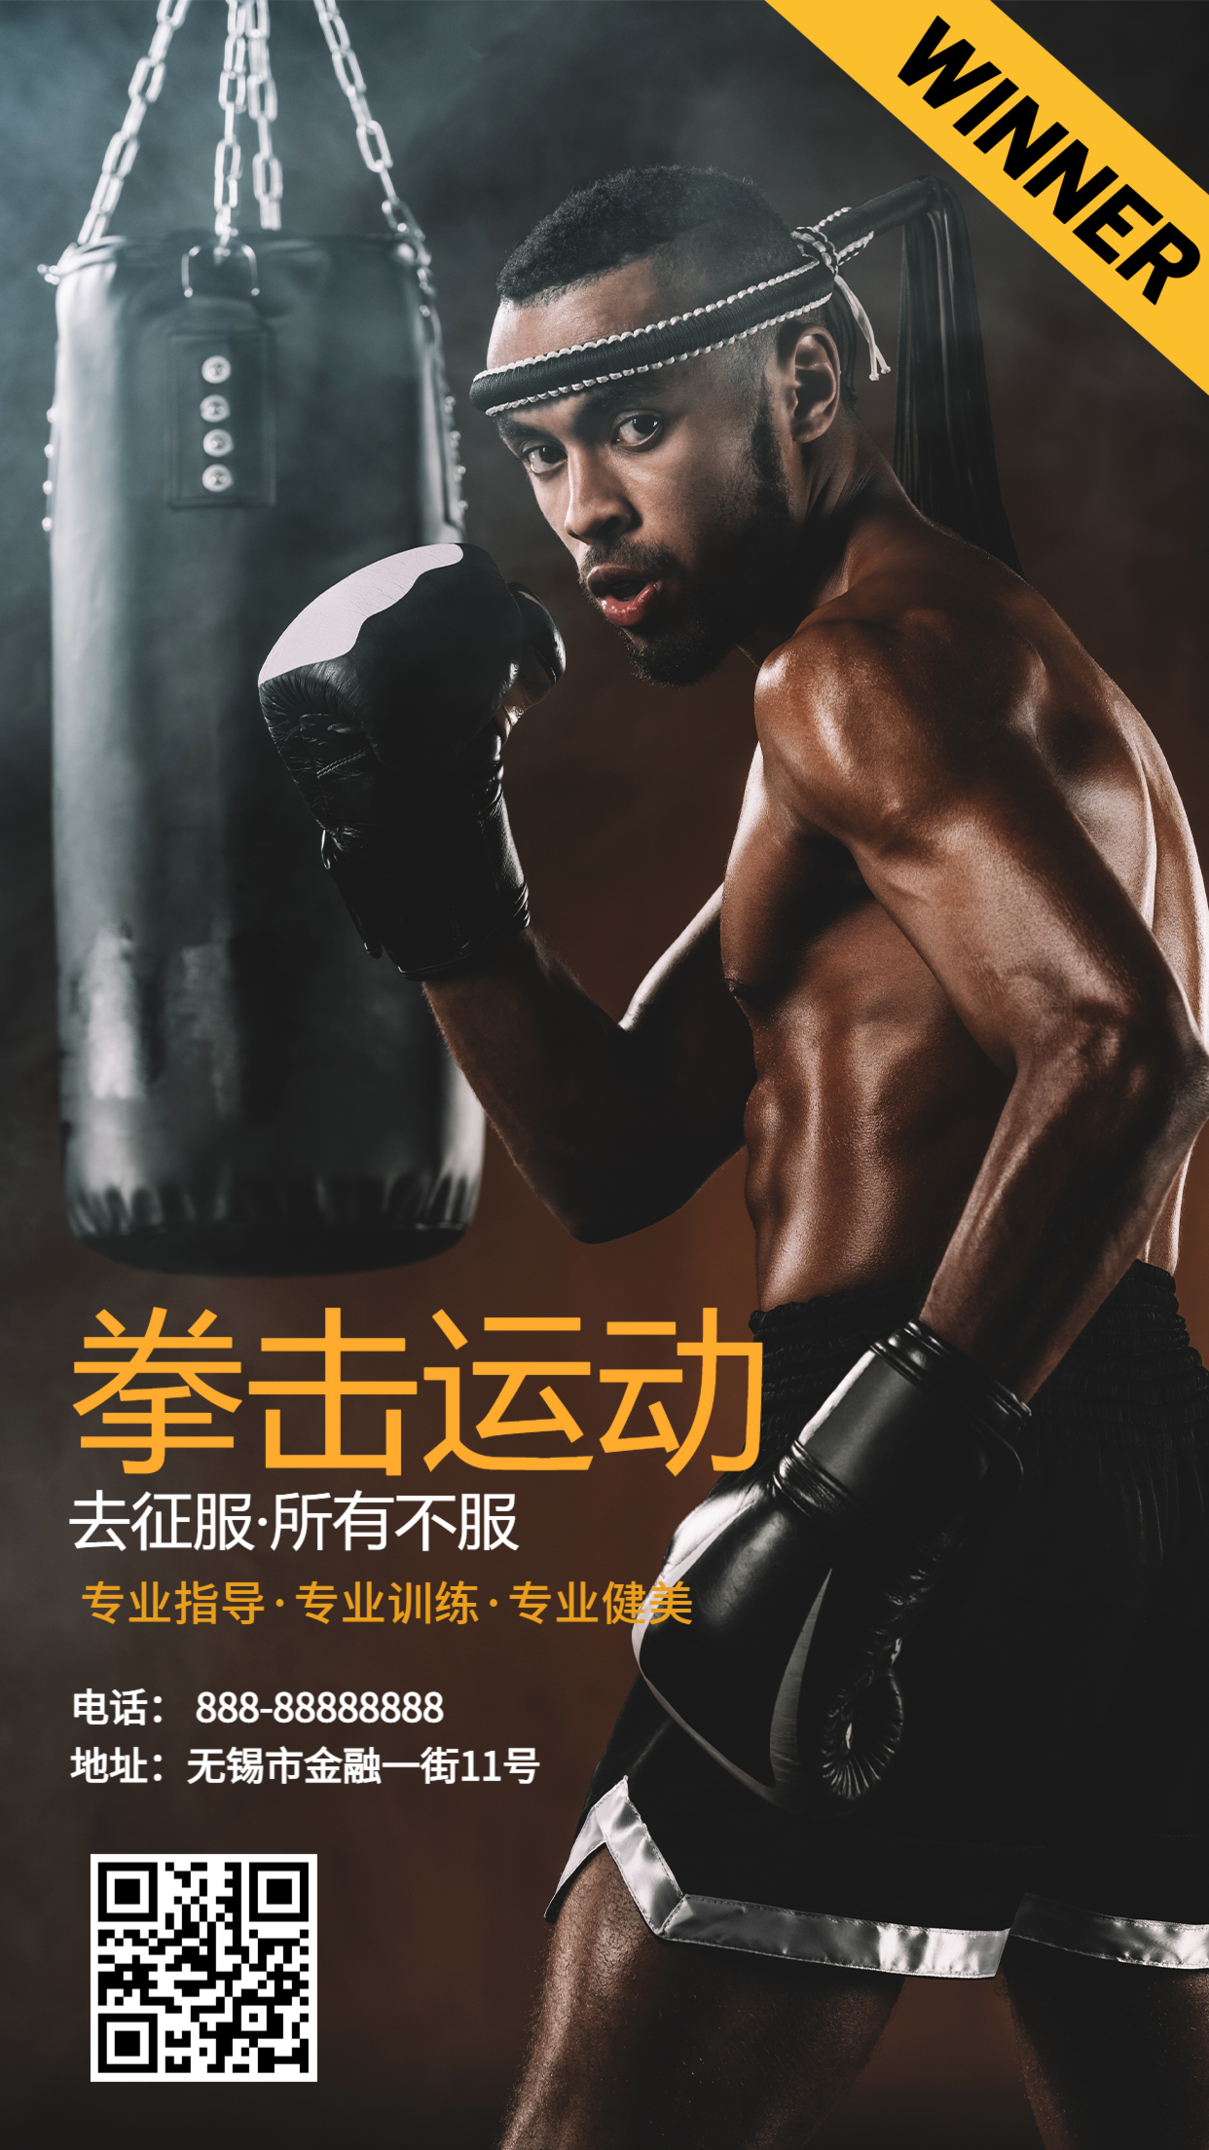 写实热血拳击健身折扣优惠健身房手机海报